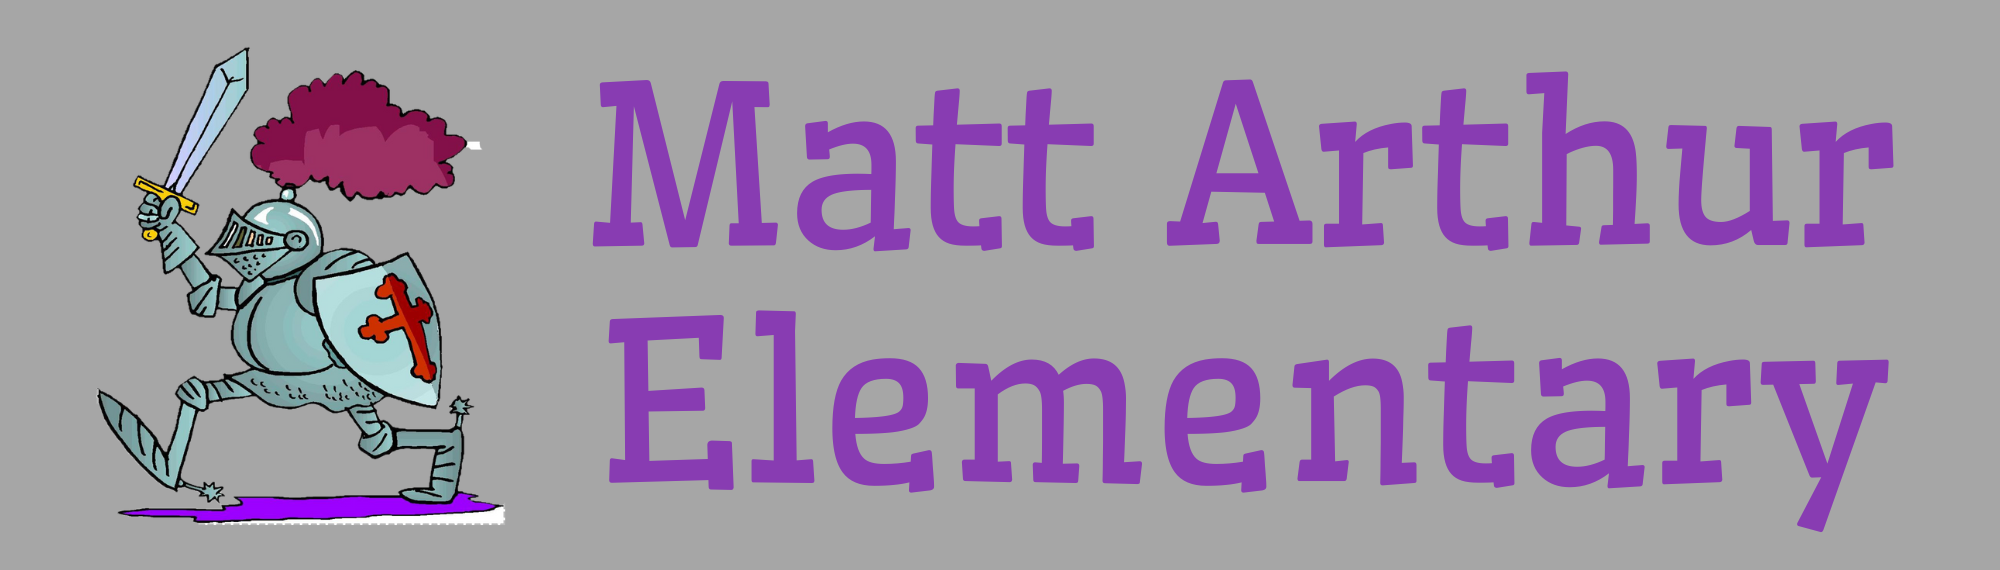 Matt Arthur Elementary